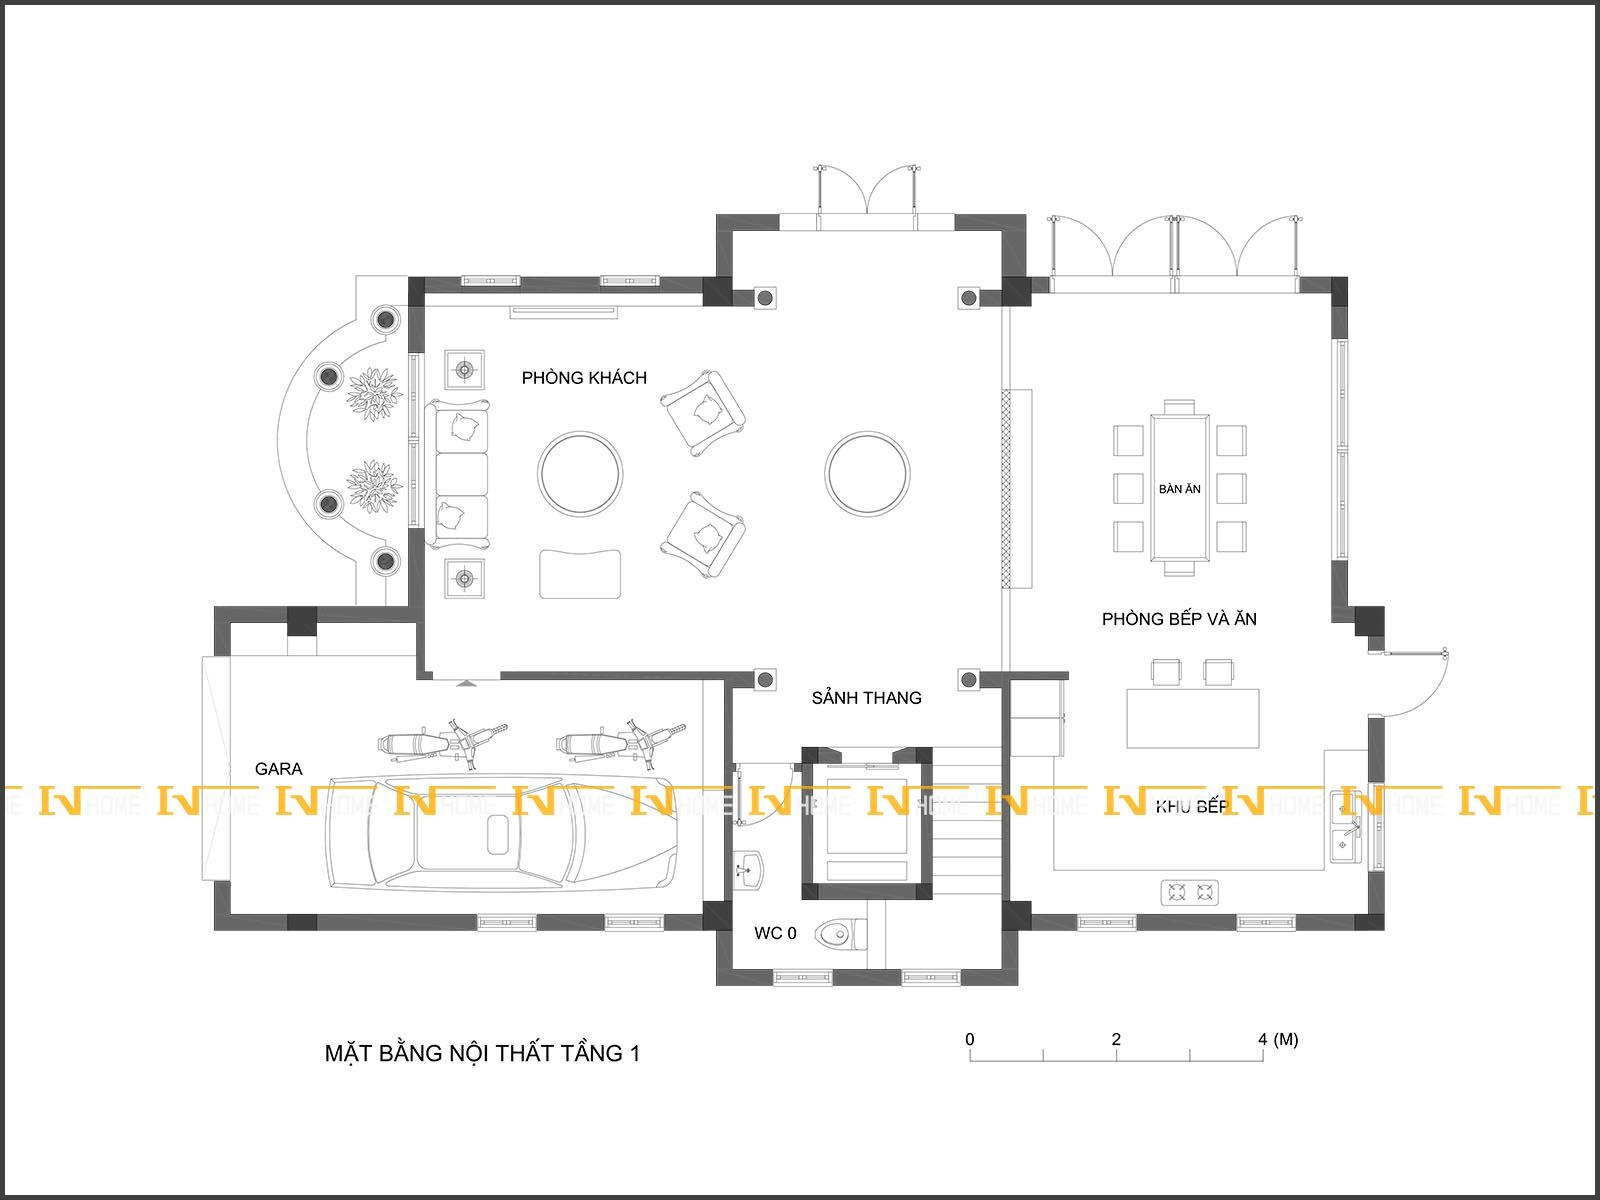 190401-1, mặt bằng gara, phòng khách, bếp và ăn tầng 1.